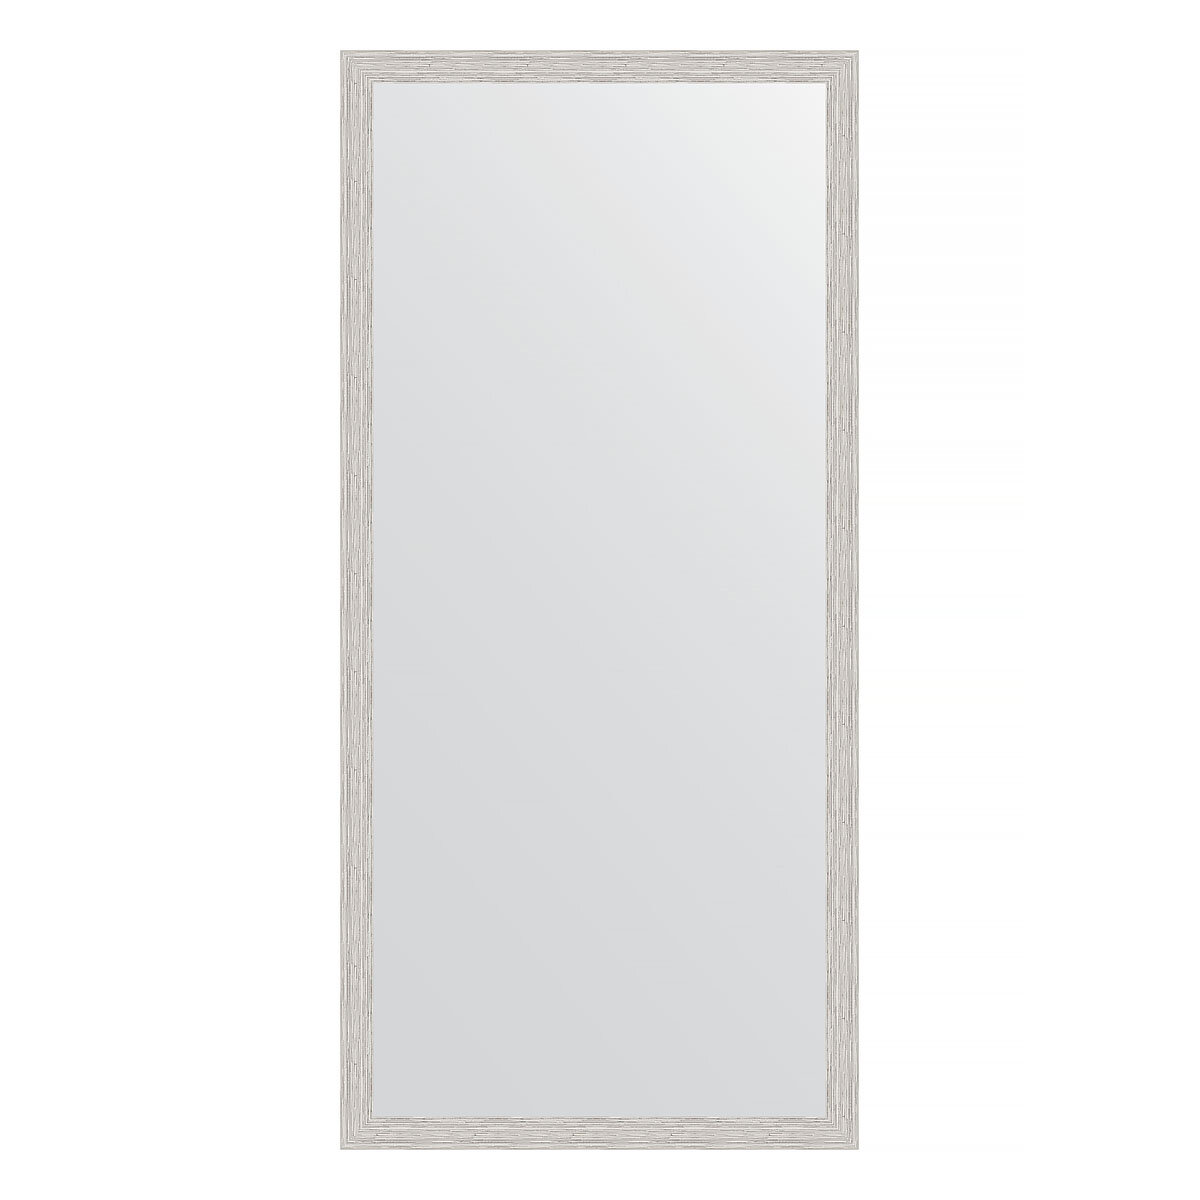 Evoform Зеркало настенное EVOFORM в багетной раме серебряный дождь, 71х151 см, BY 3325